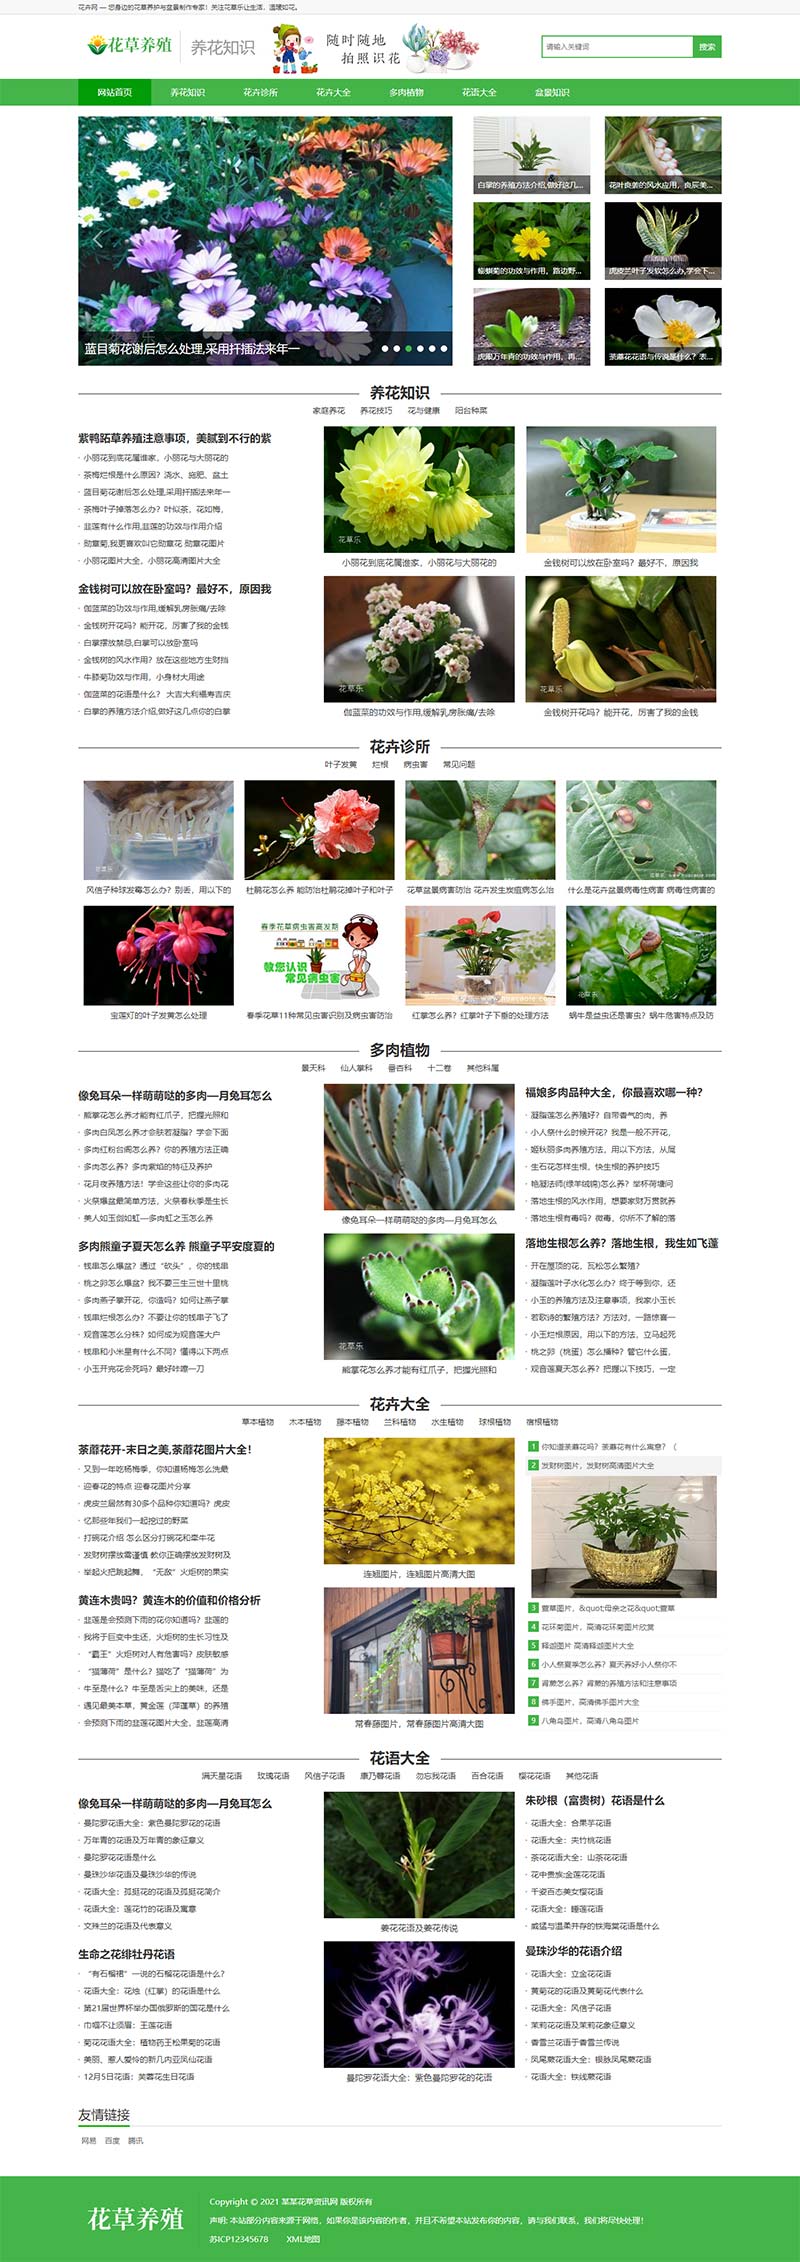 响应式花卉养殖新闻资讯网站模板 绿色花草植物网站源码下载(带手机版数据同步)-2